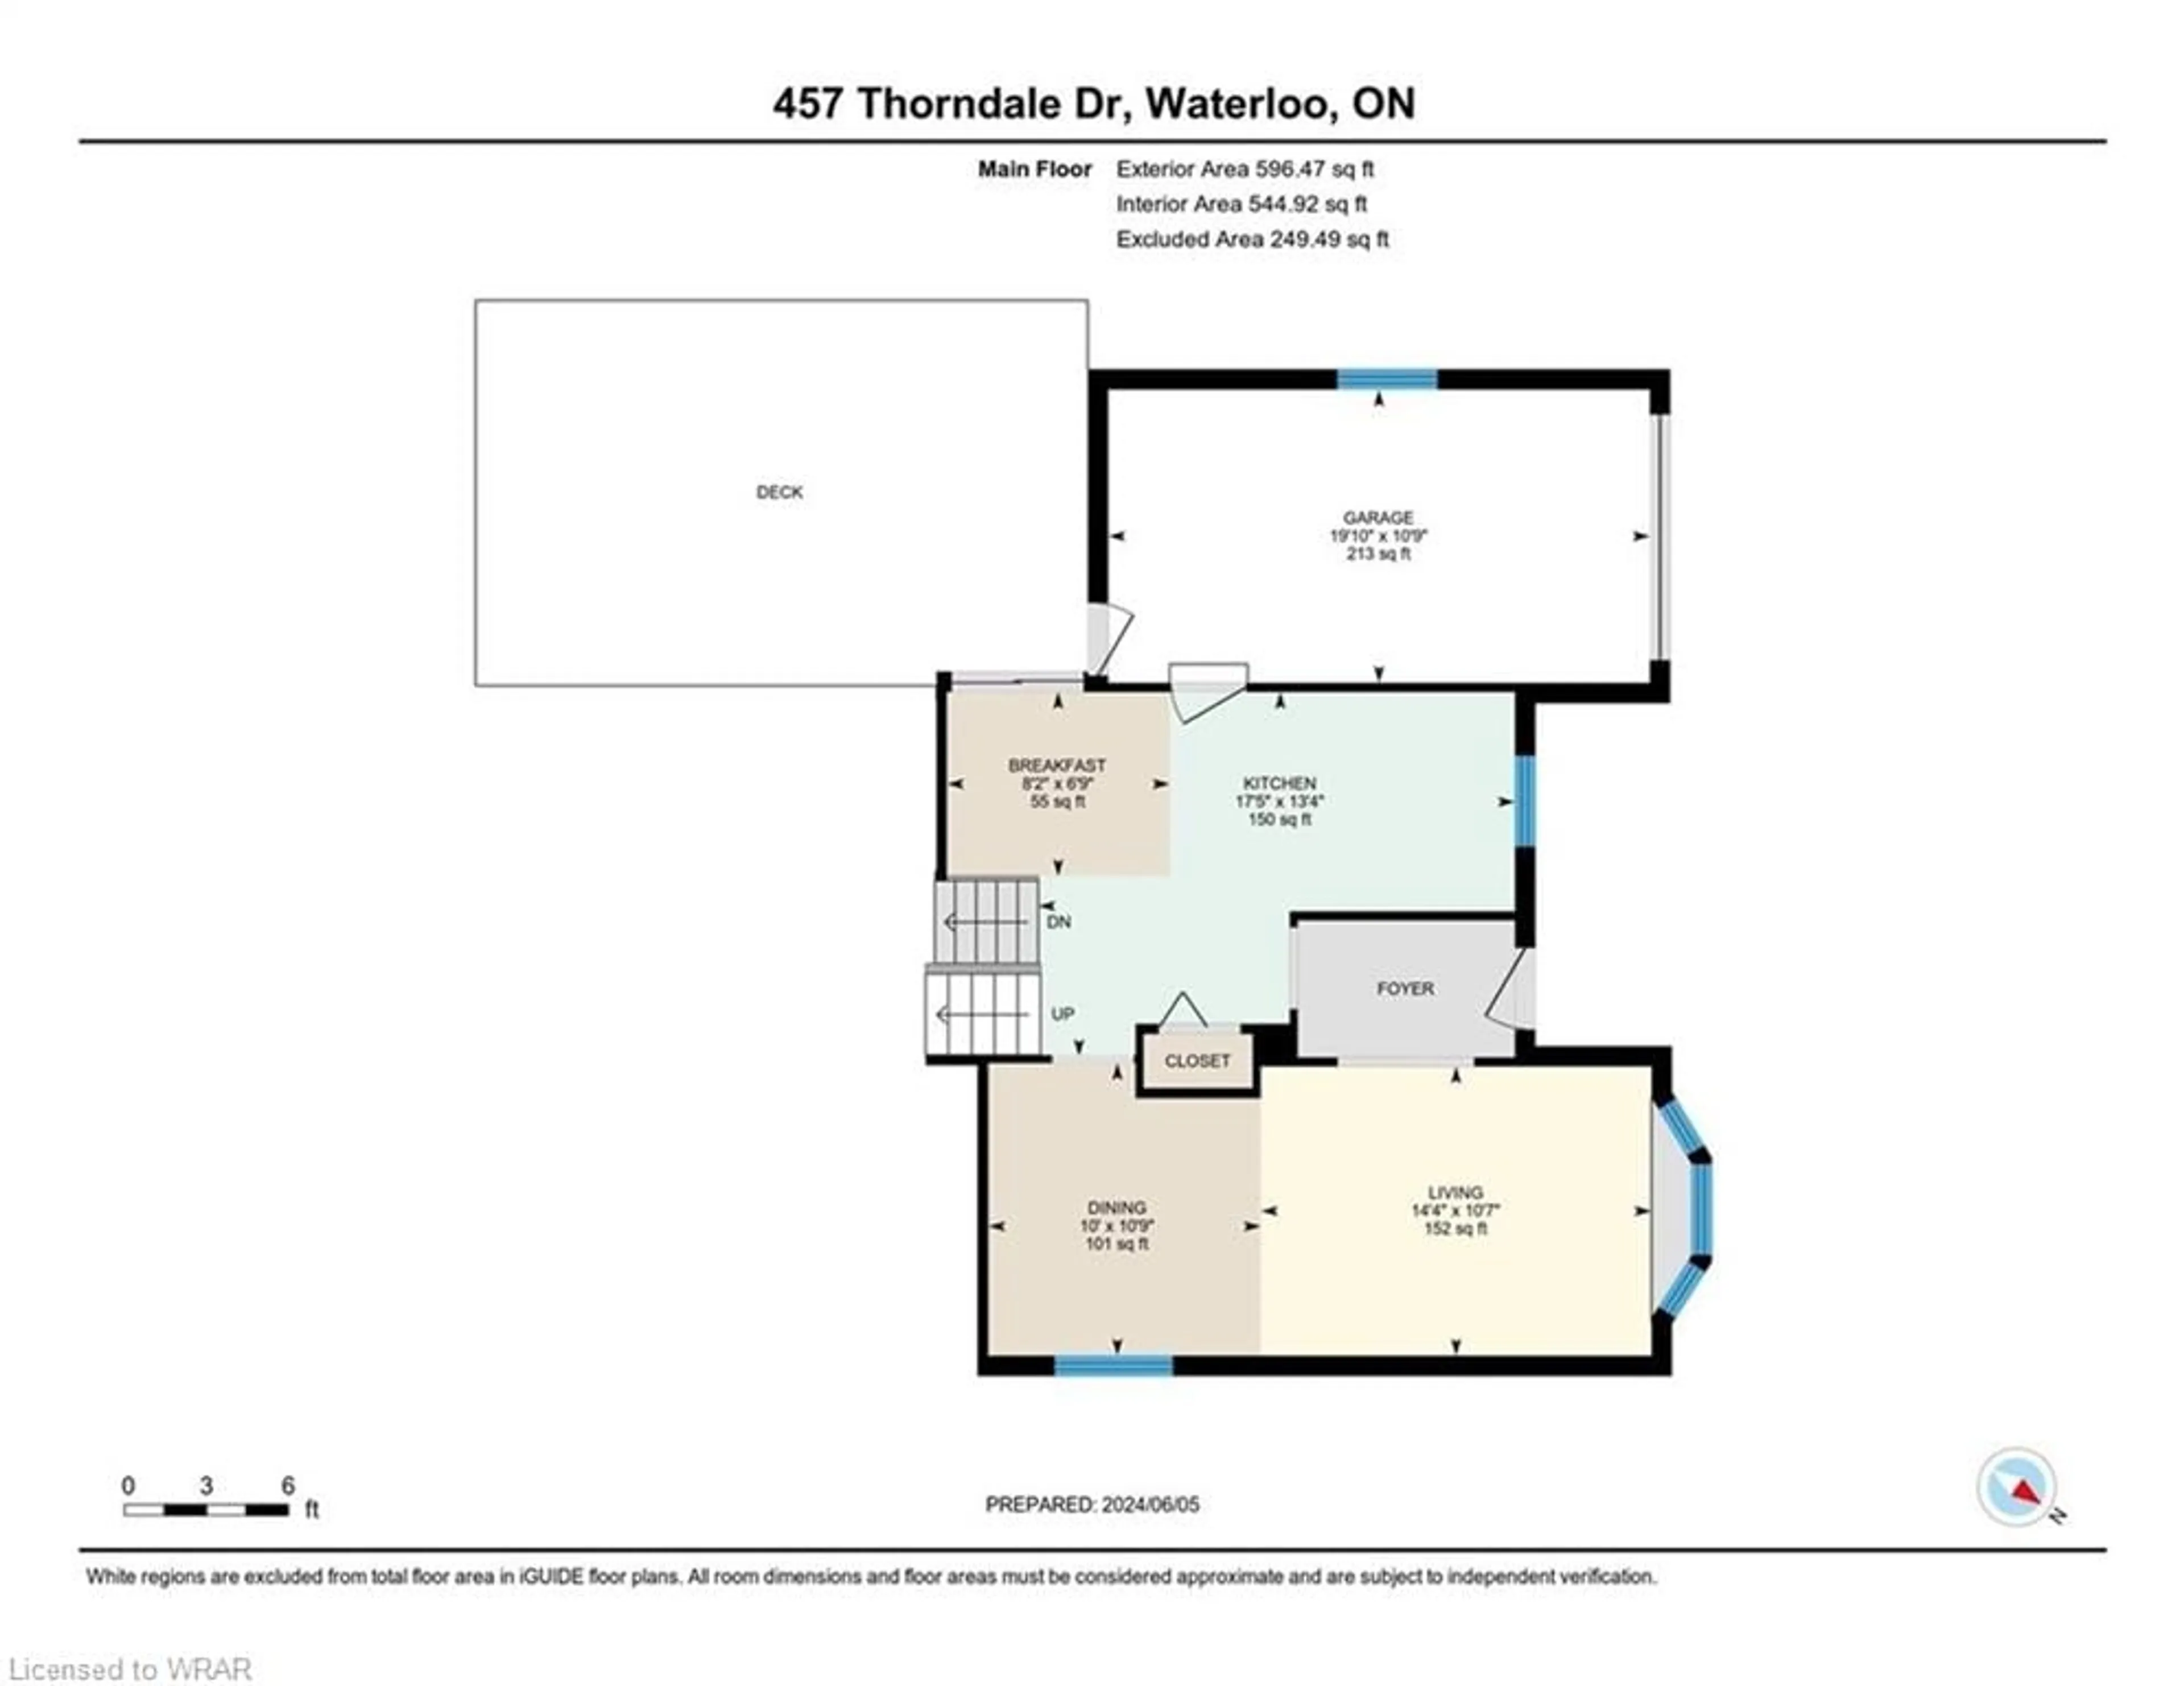 Floor plan for 457 Thorndale Dr, Waterloo Ontario N2T 1S9